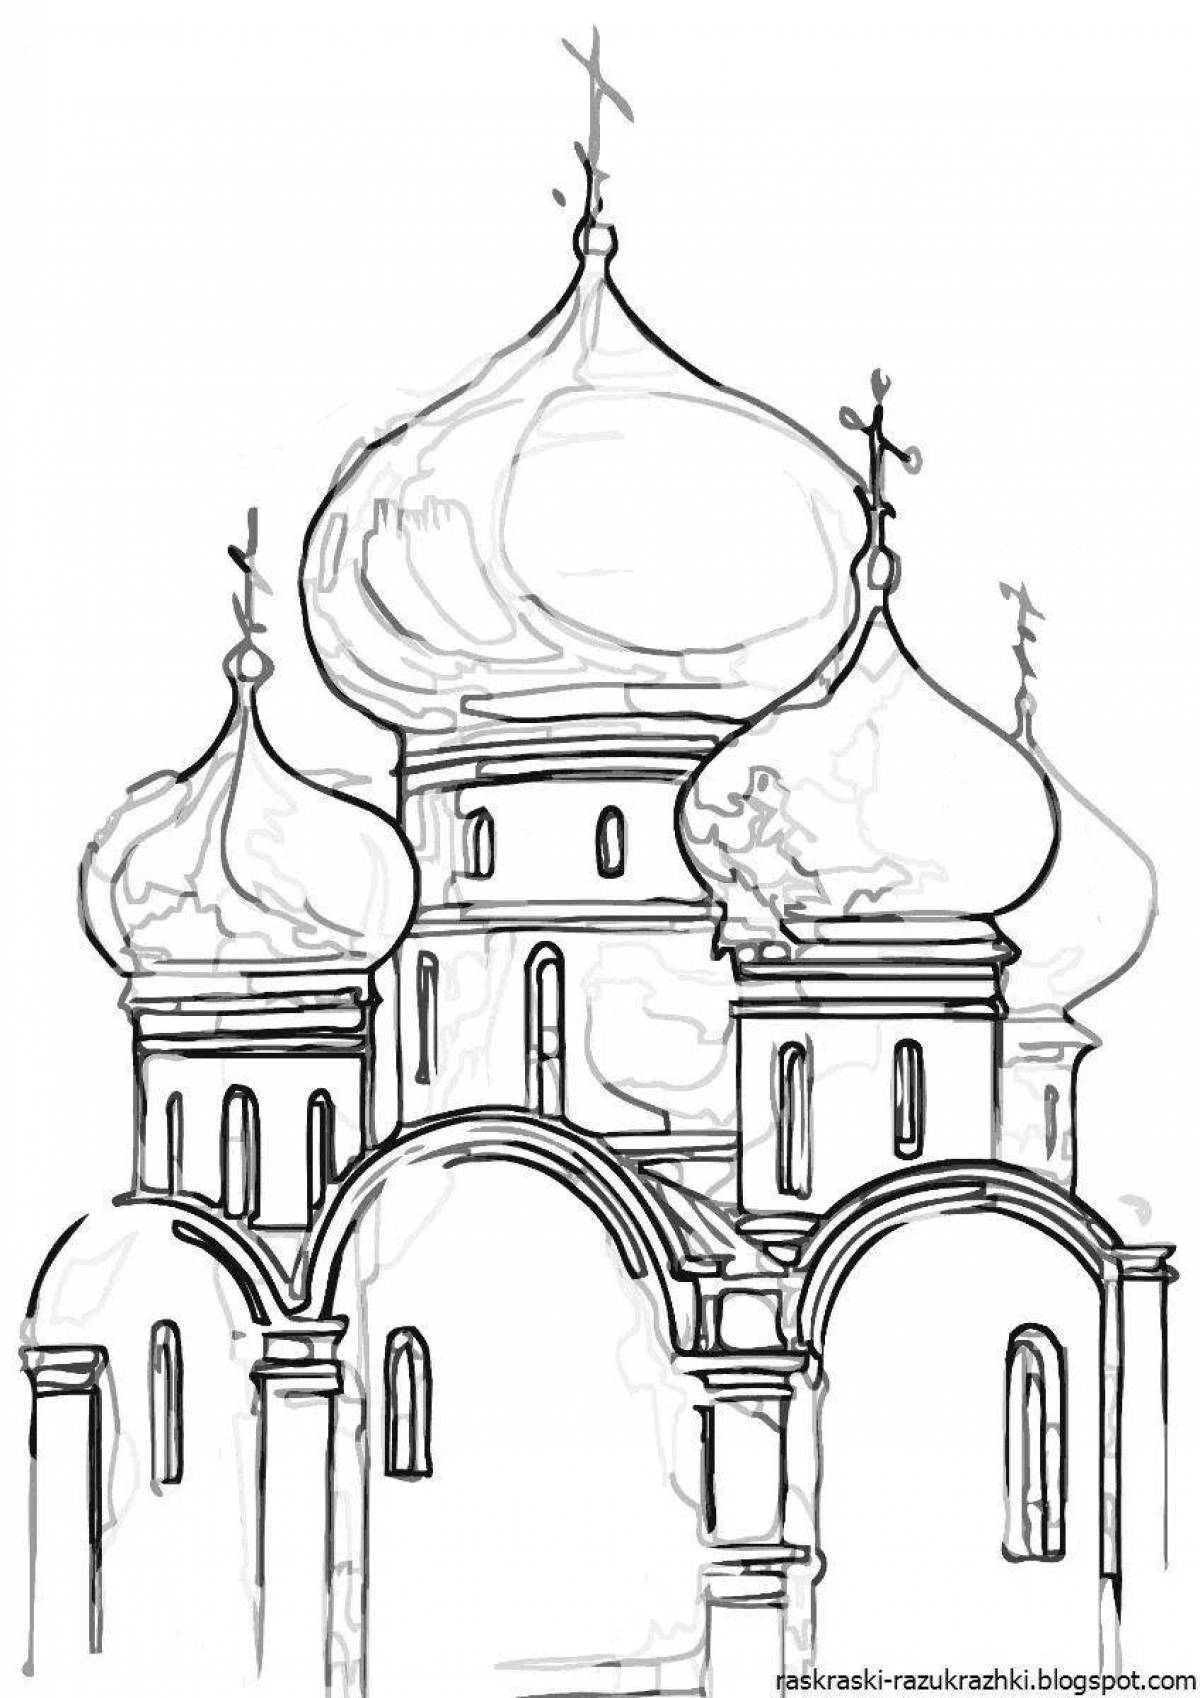 Рисунок царственной церкви